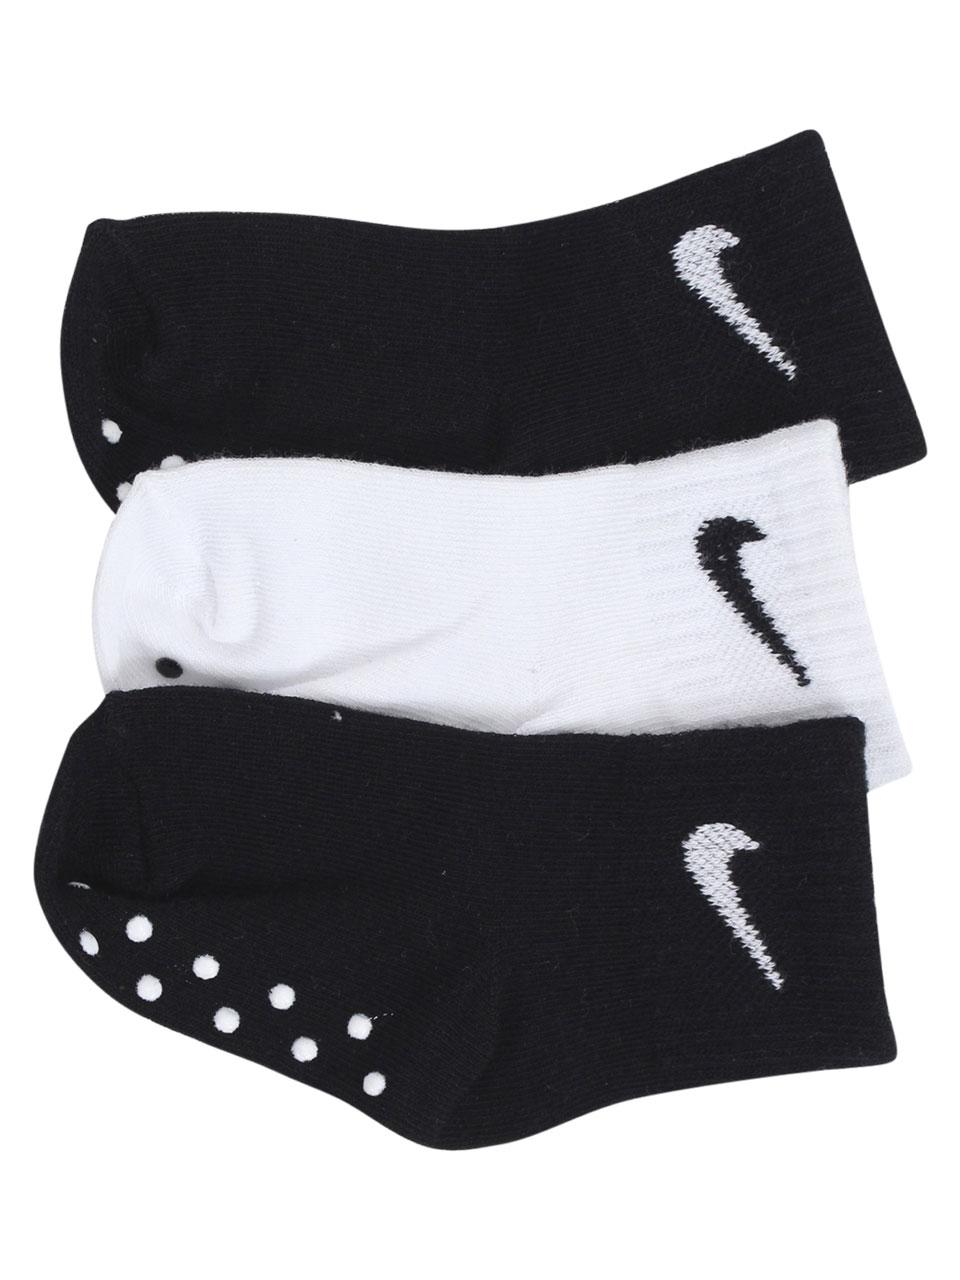 infant nike socks